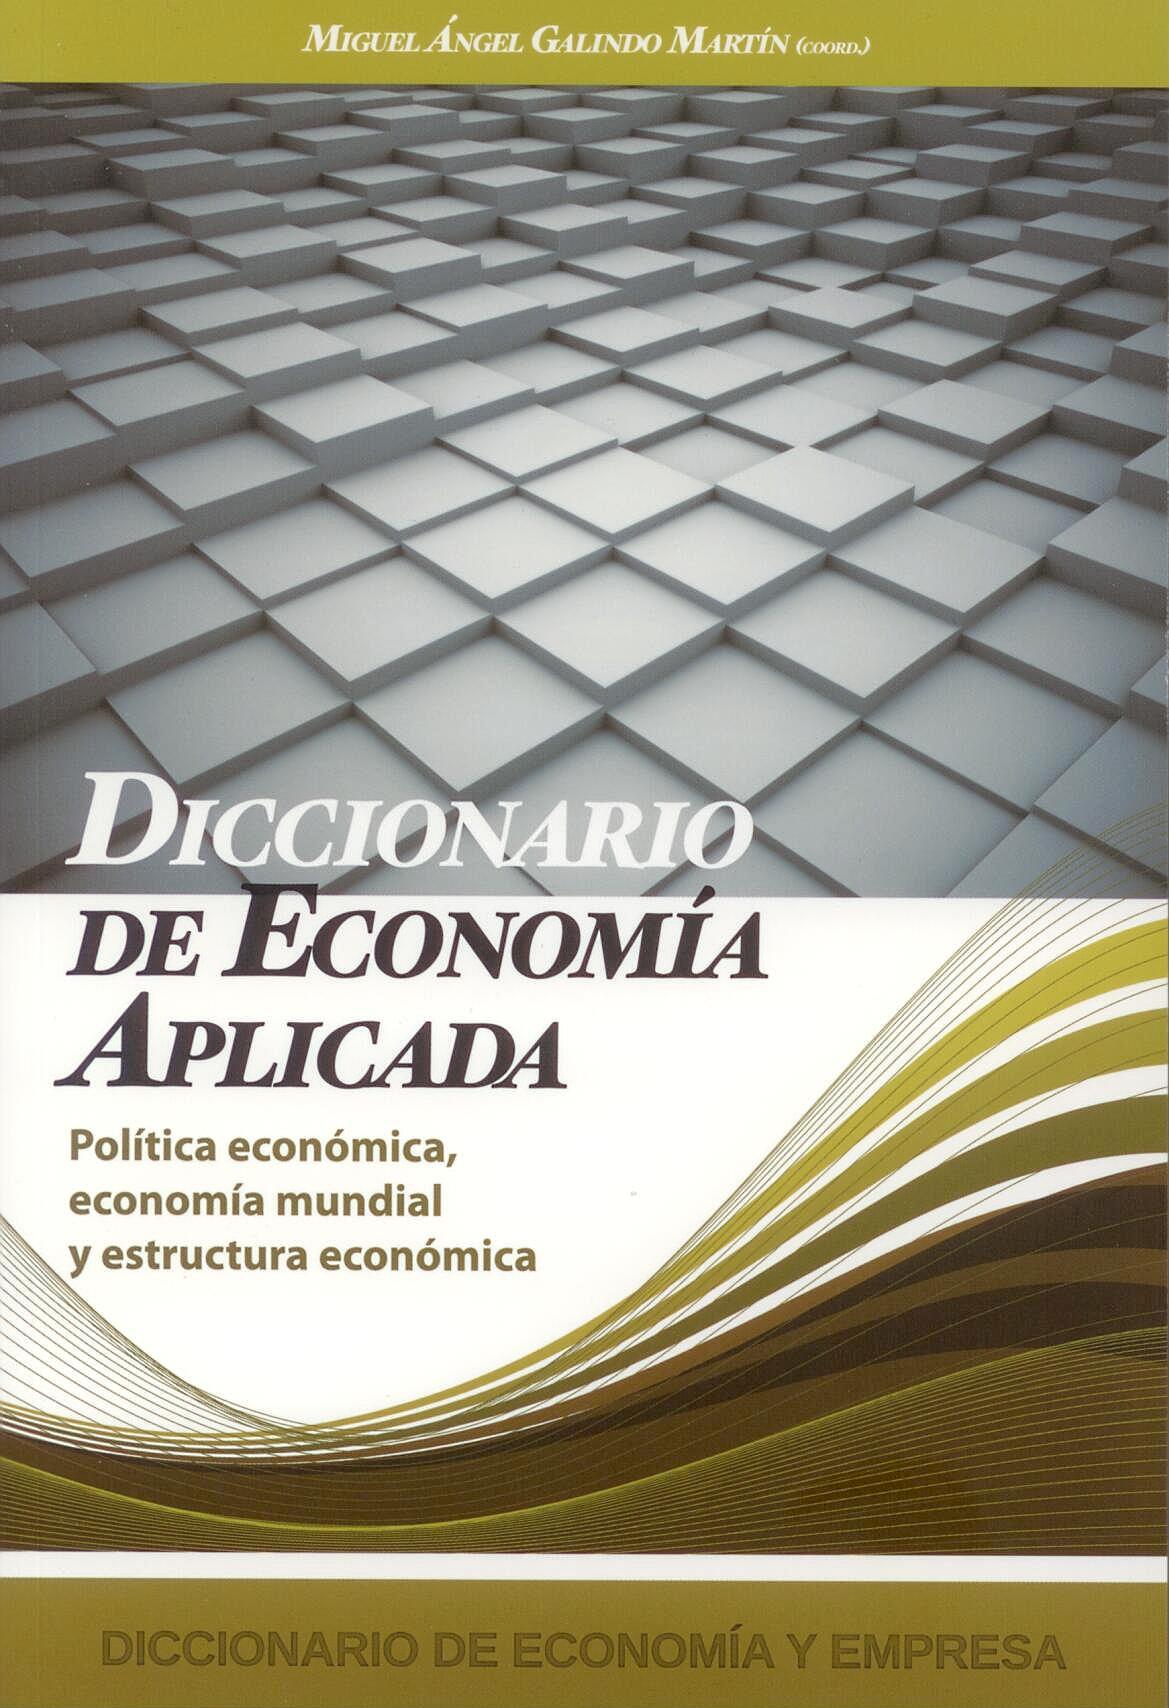 Diccionario de Economia Aplicada "Politica Economica, Economia Mundial y Estructura Economica."